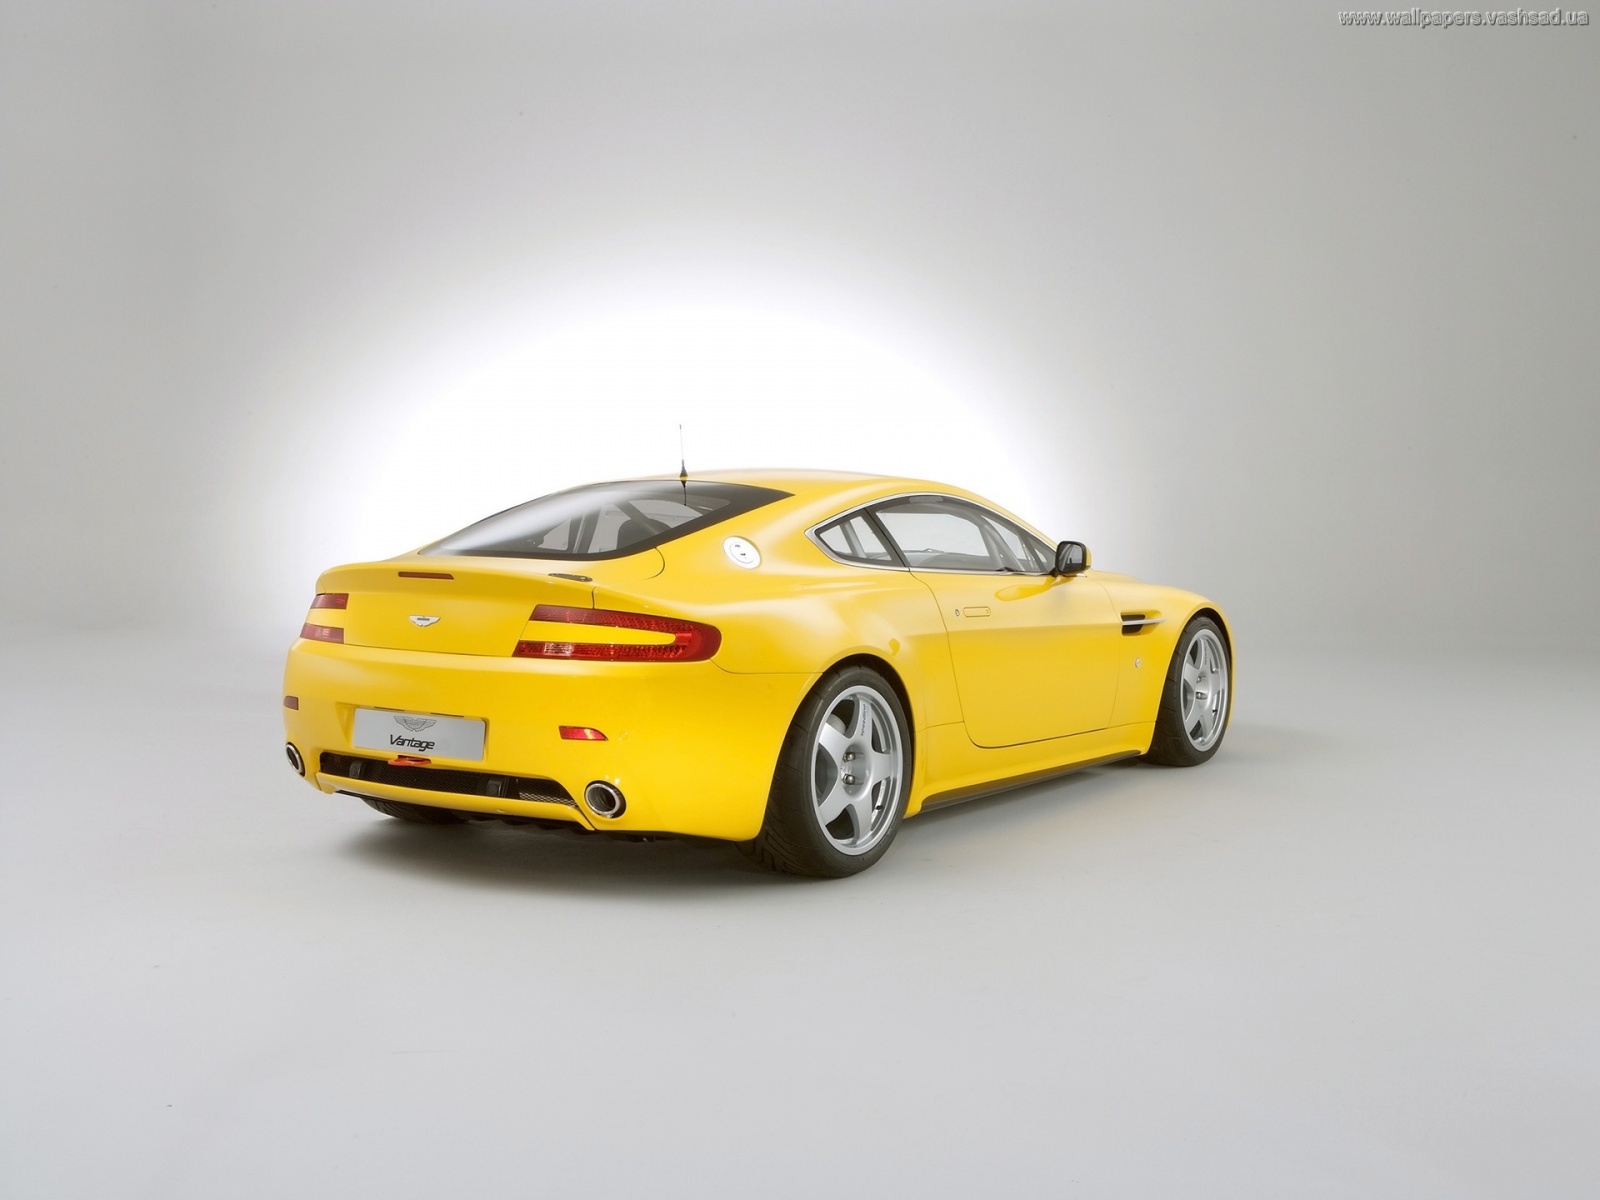 Жёлтый спортивный автомобиль HD фото картинки, обои рабочий стол